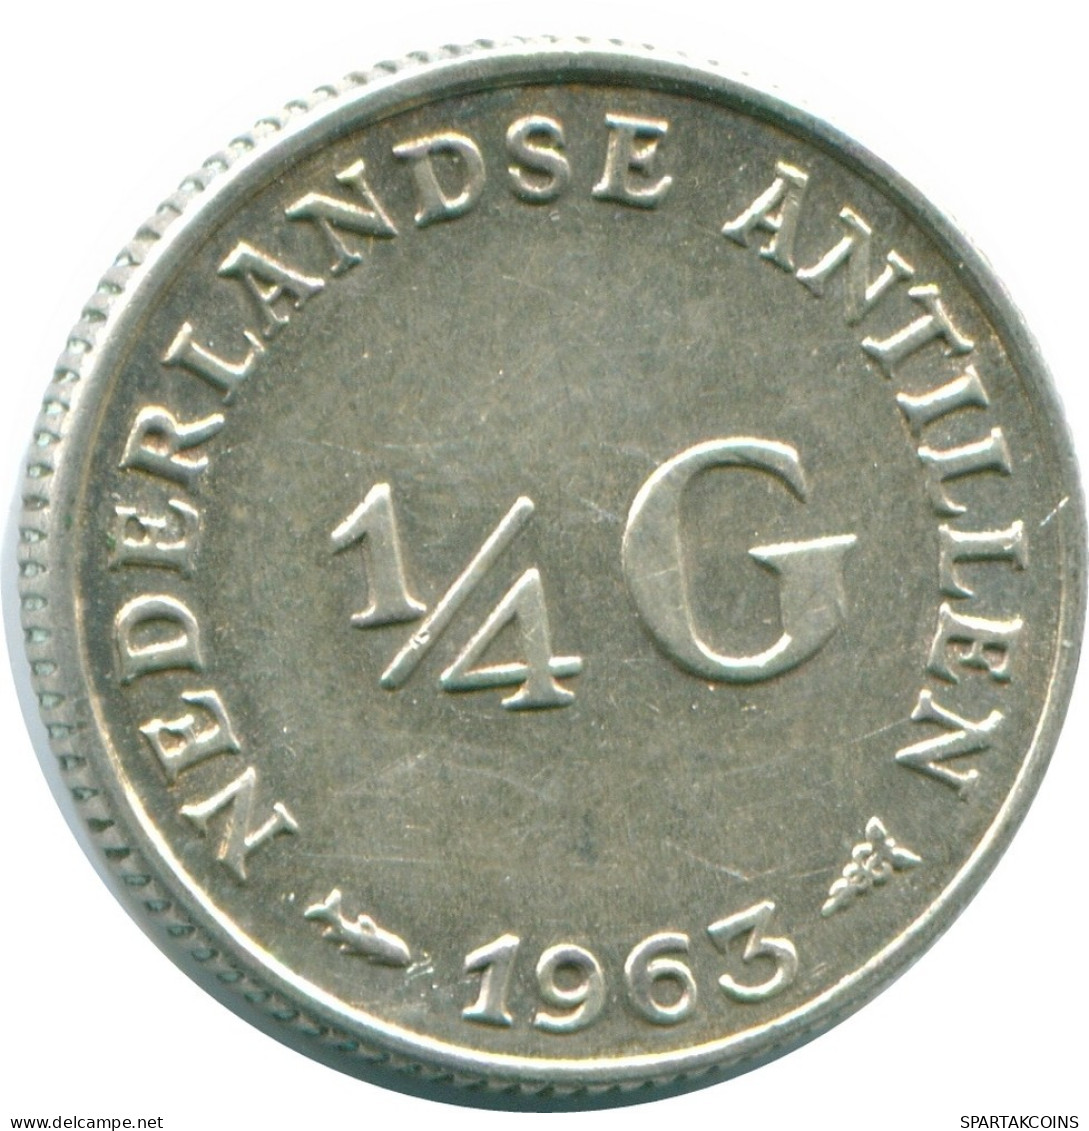 1/4 GULDEN 1963 NIEDERLÄNDISCHE ANTILLEN SILBER Koloniale Münze #NL11243.4.D.A - Nederlandse Antillen